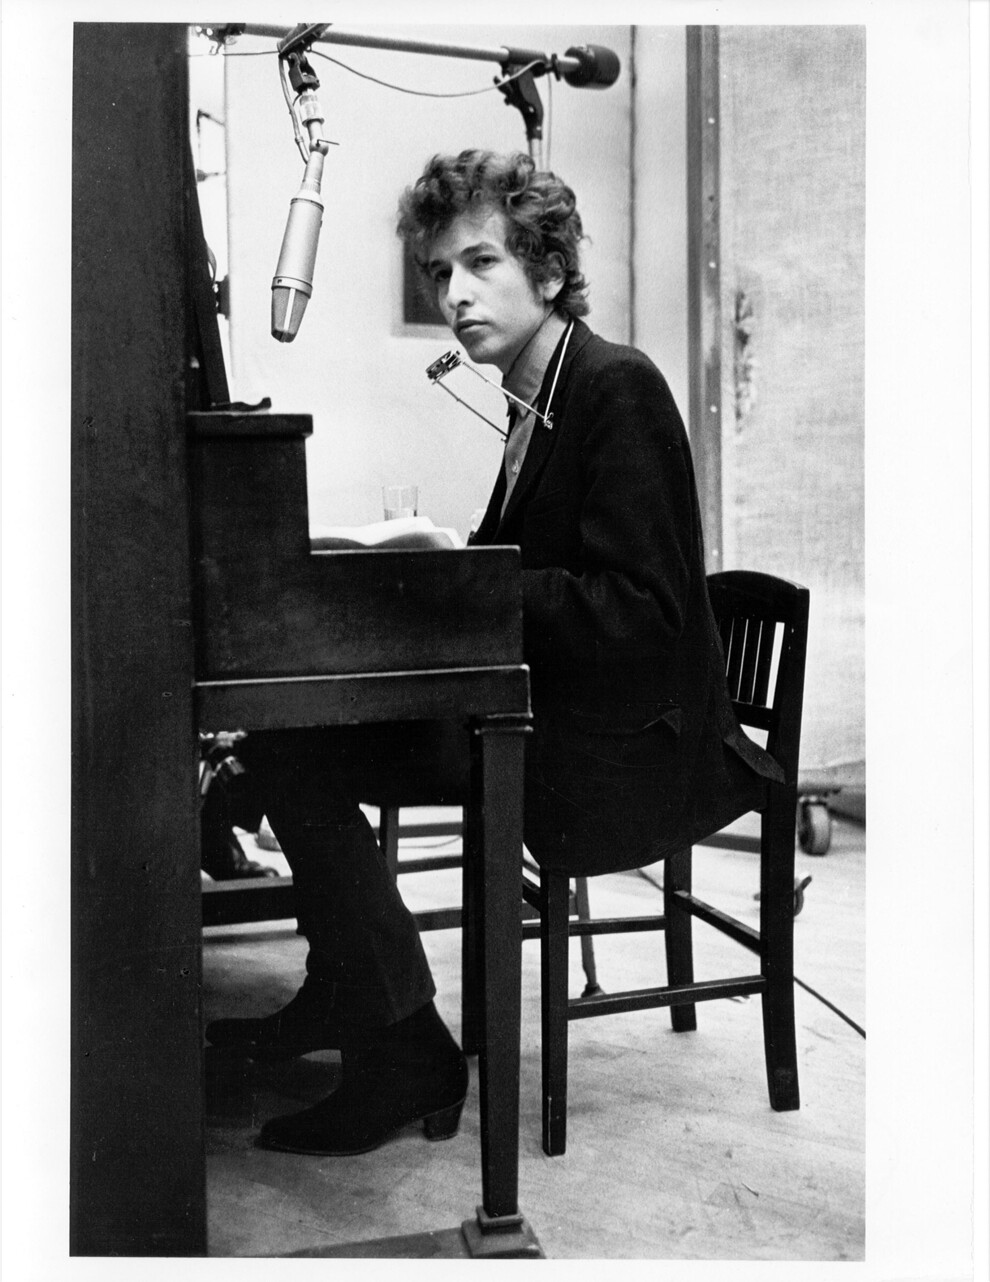 Боб Дилан играет на пианино во время записи своего альбома Highway 61 Revisited, 13-15 января 1965 года в студии A Columbia в Нью-Йорке